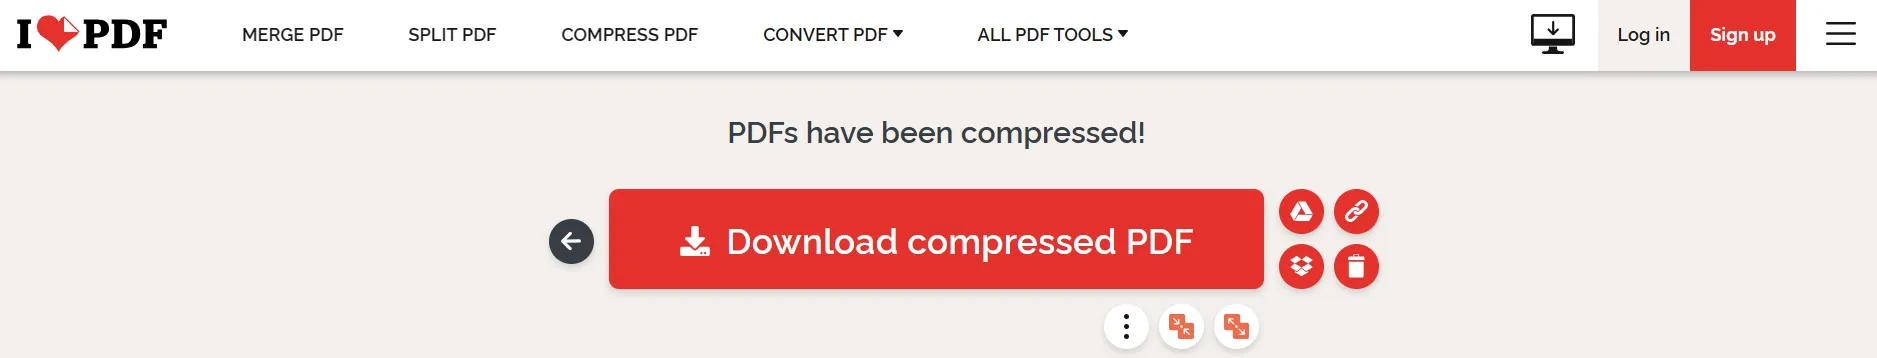 Haga clic en el botón "Descargar PDF comprimido" para descargar el nuevo archivo comprimido.